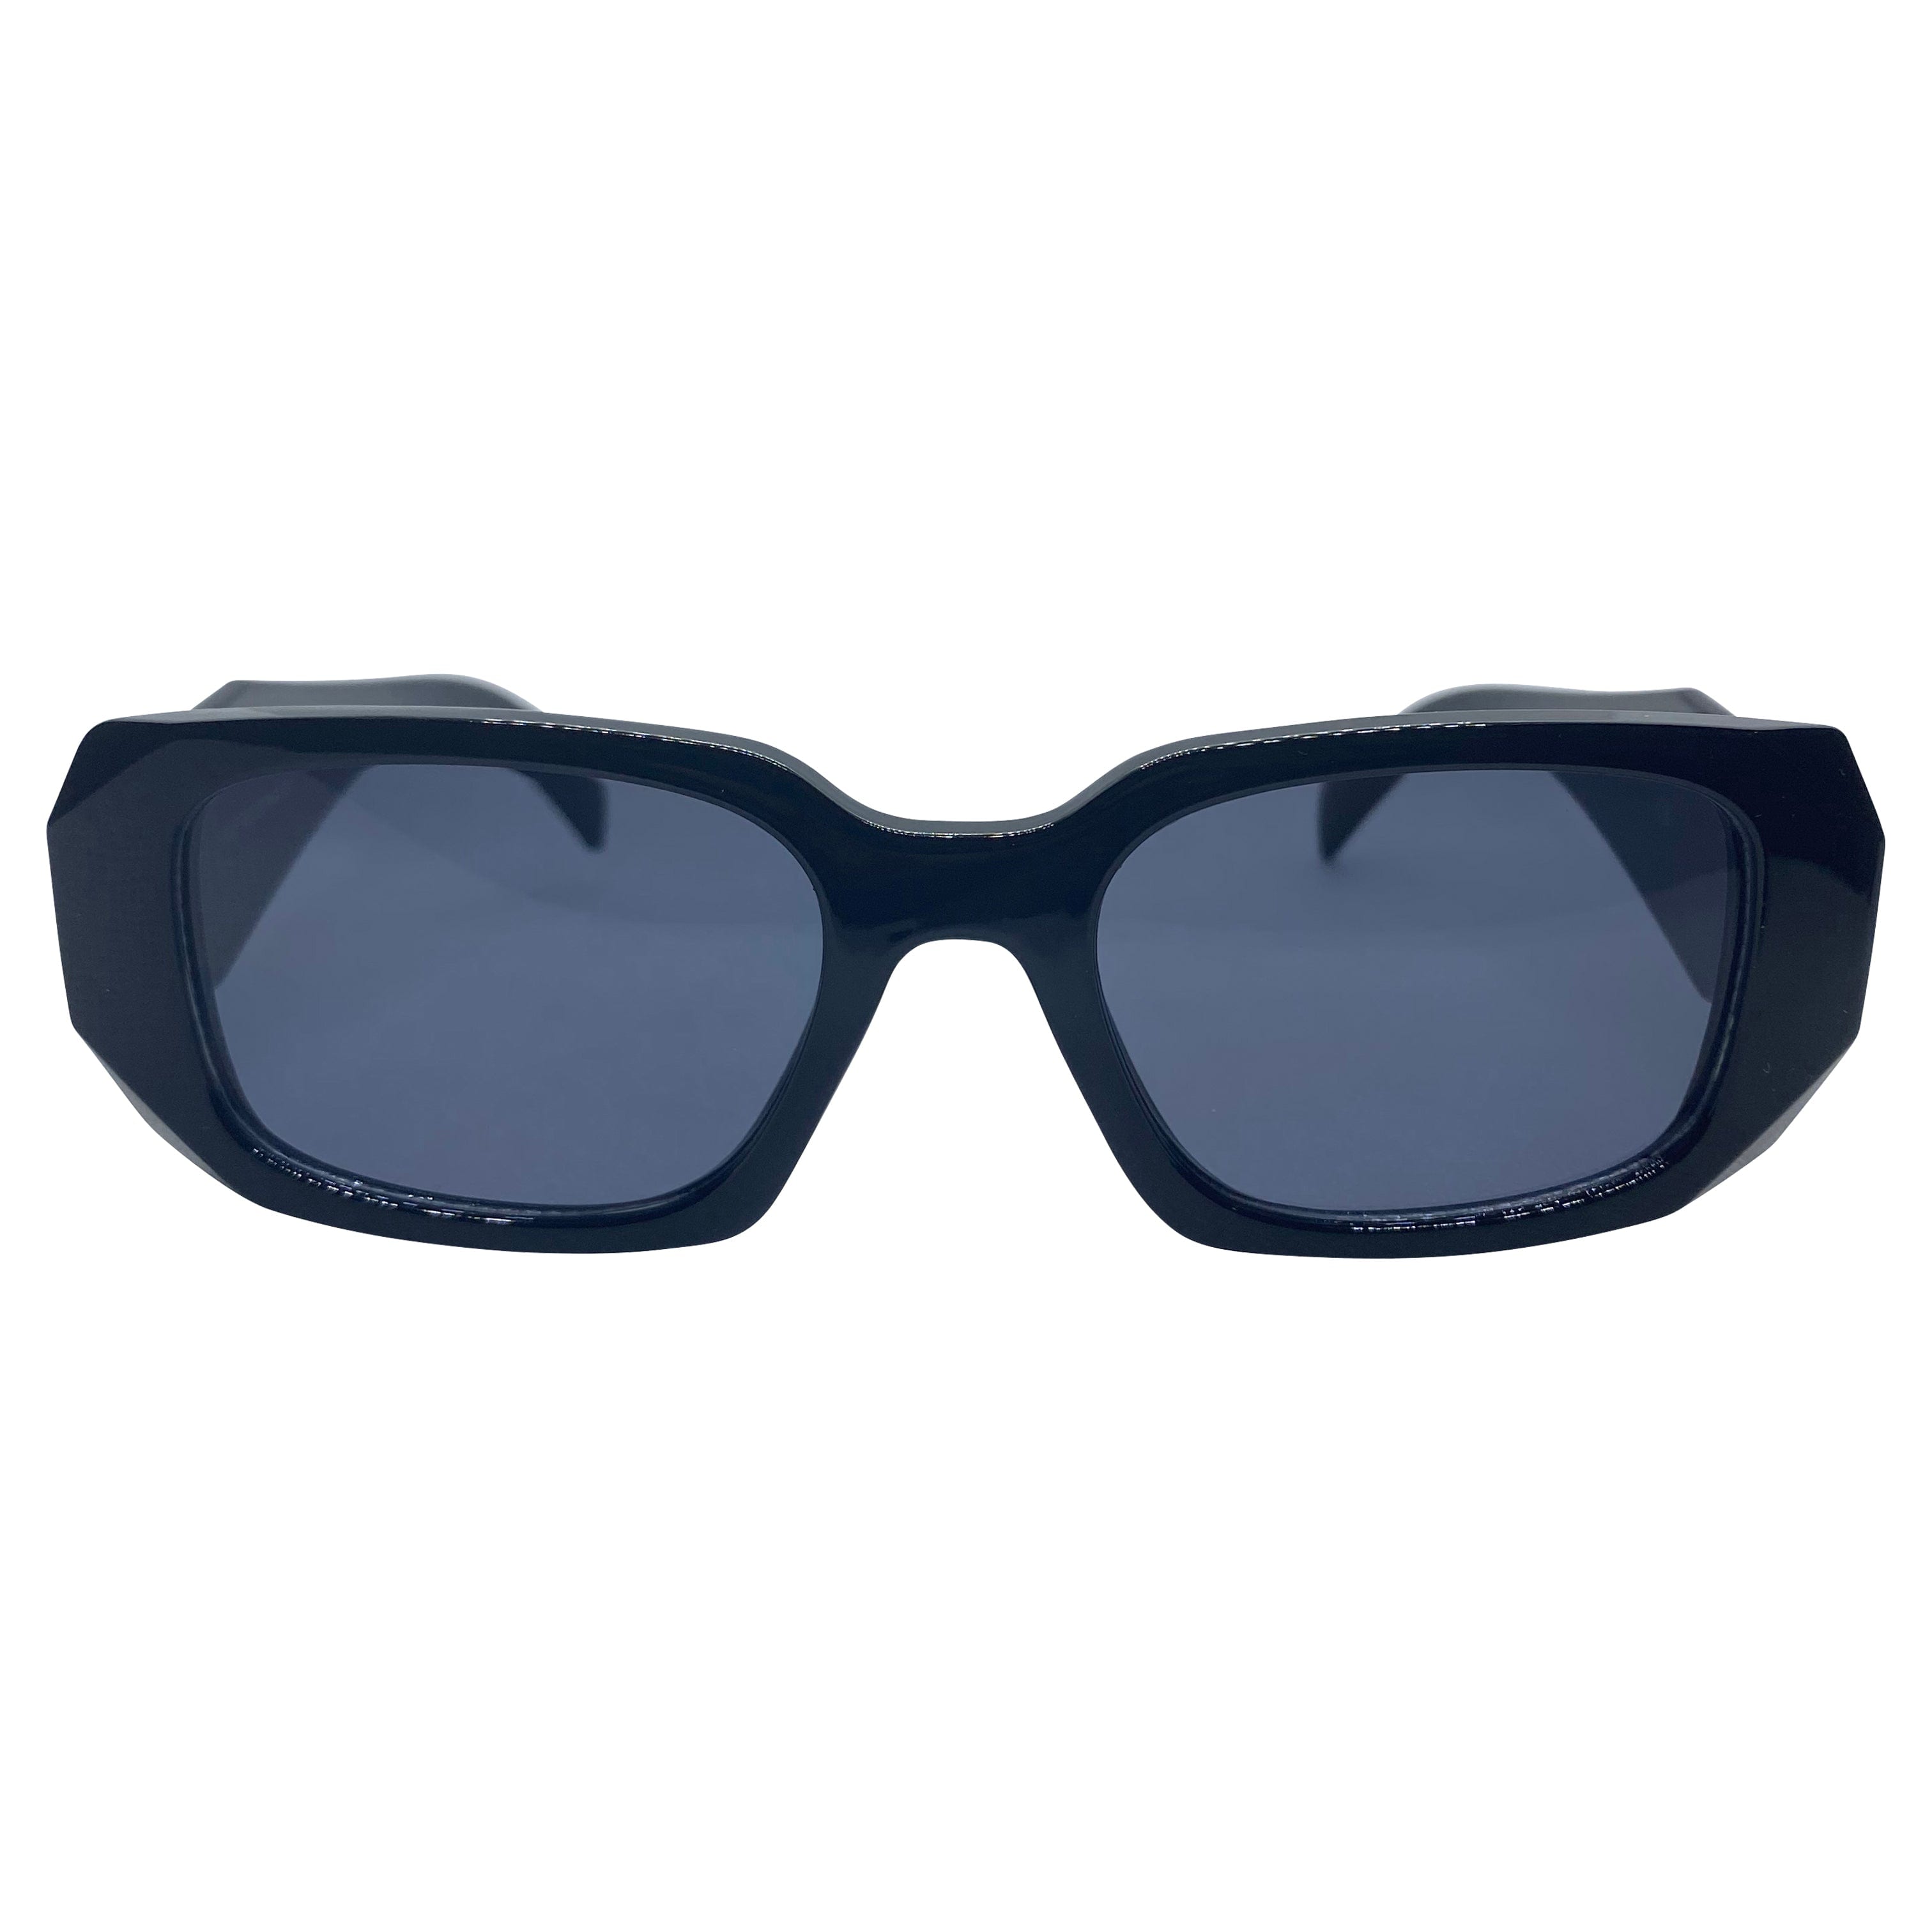 KNIGHT Black/SD Square Sunglasses